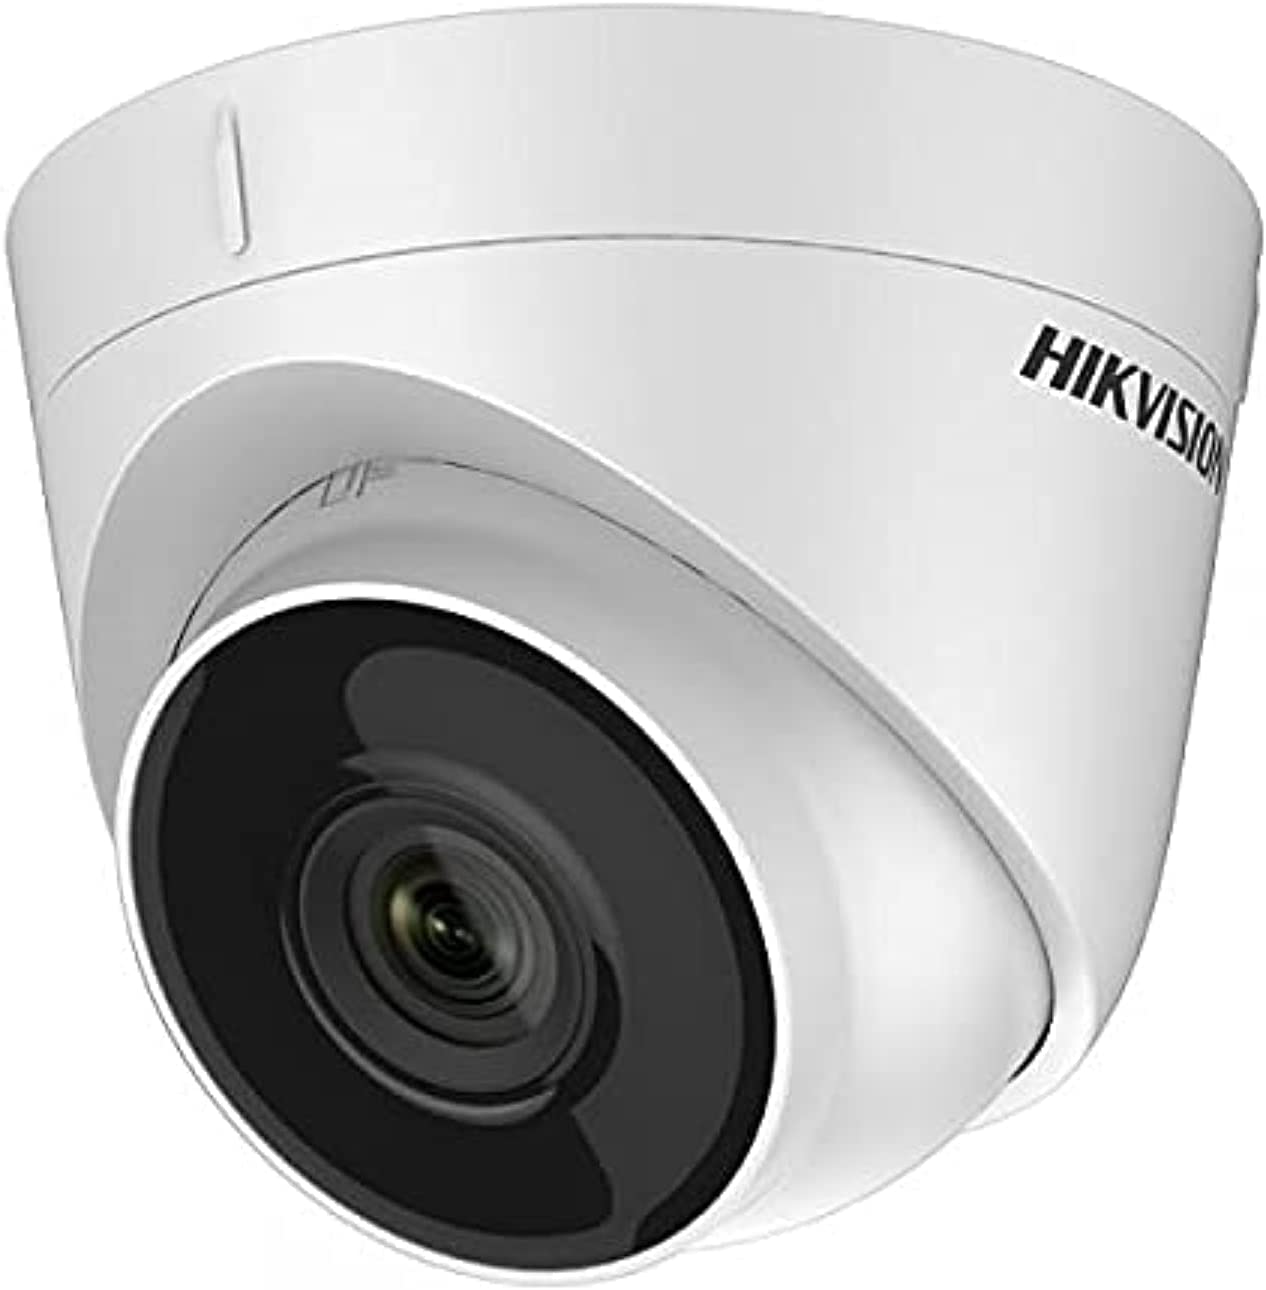 Camera Hikvision 2MP Indoor (DS-2CE76D0T-EXIPF 2.8M)